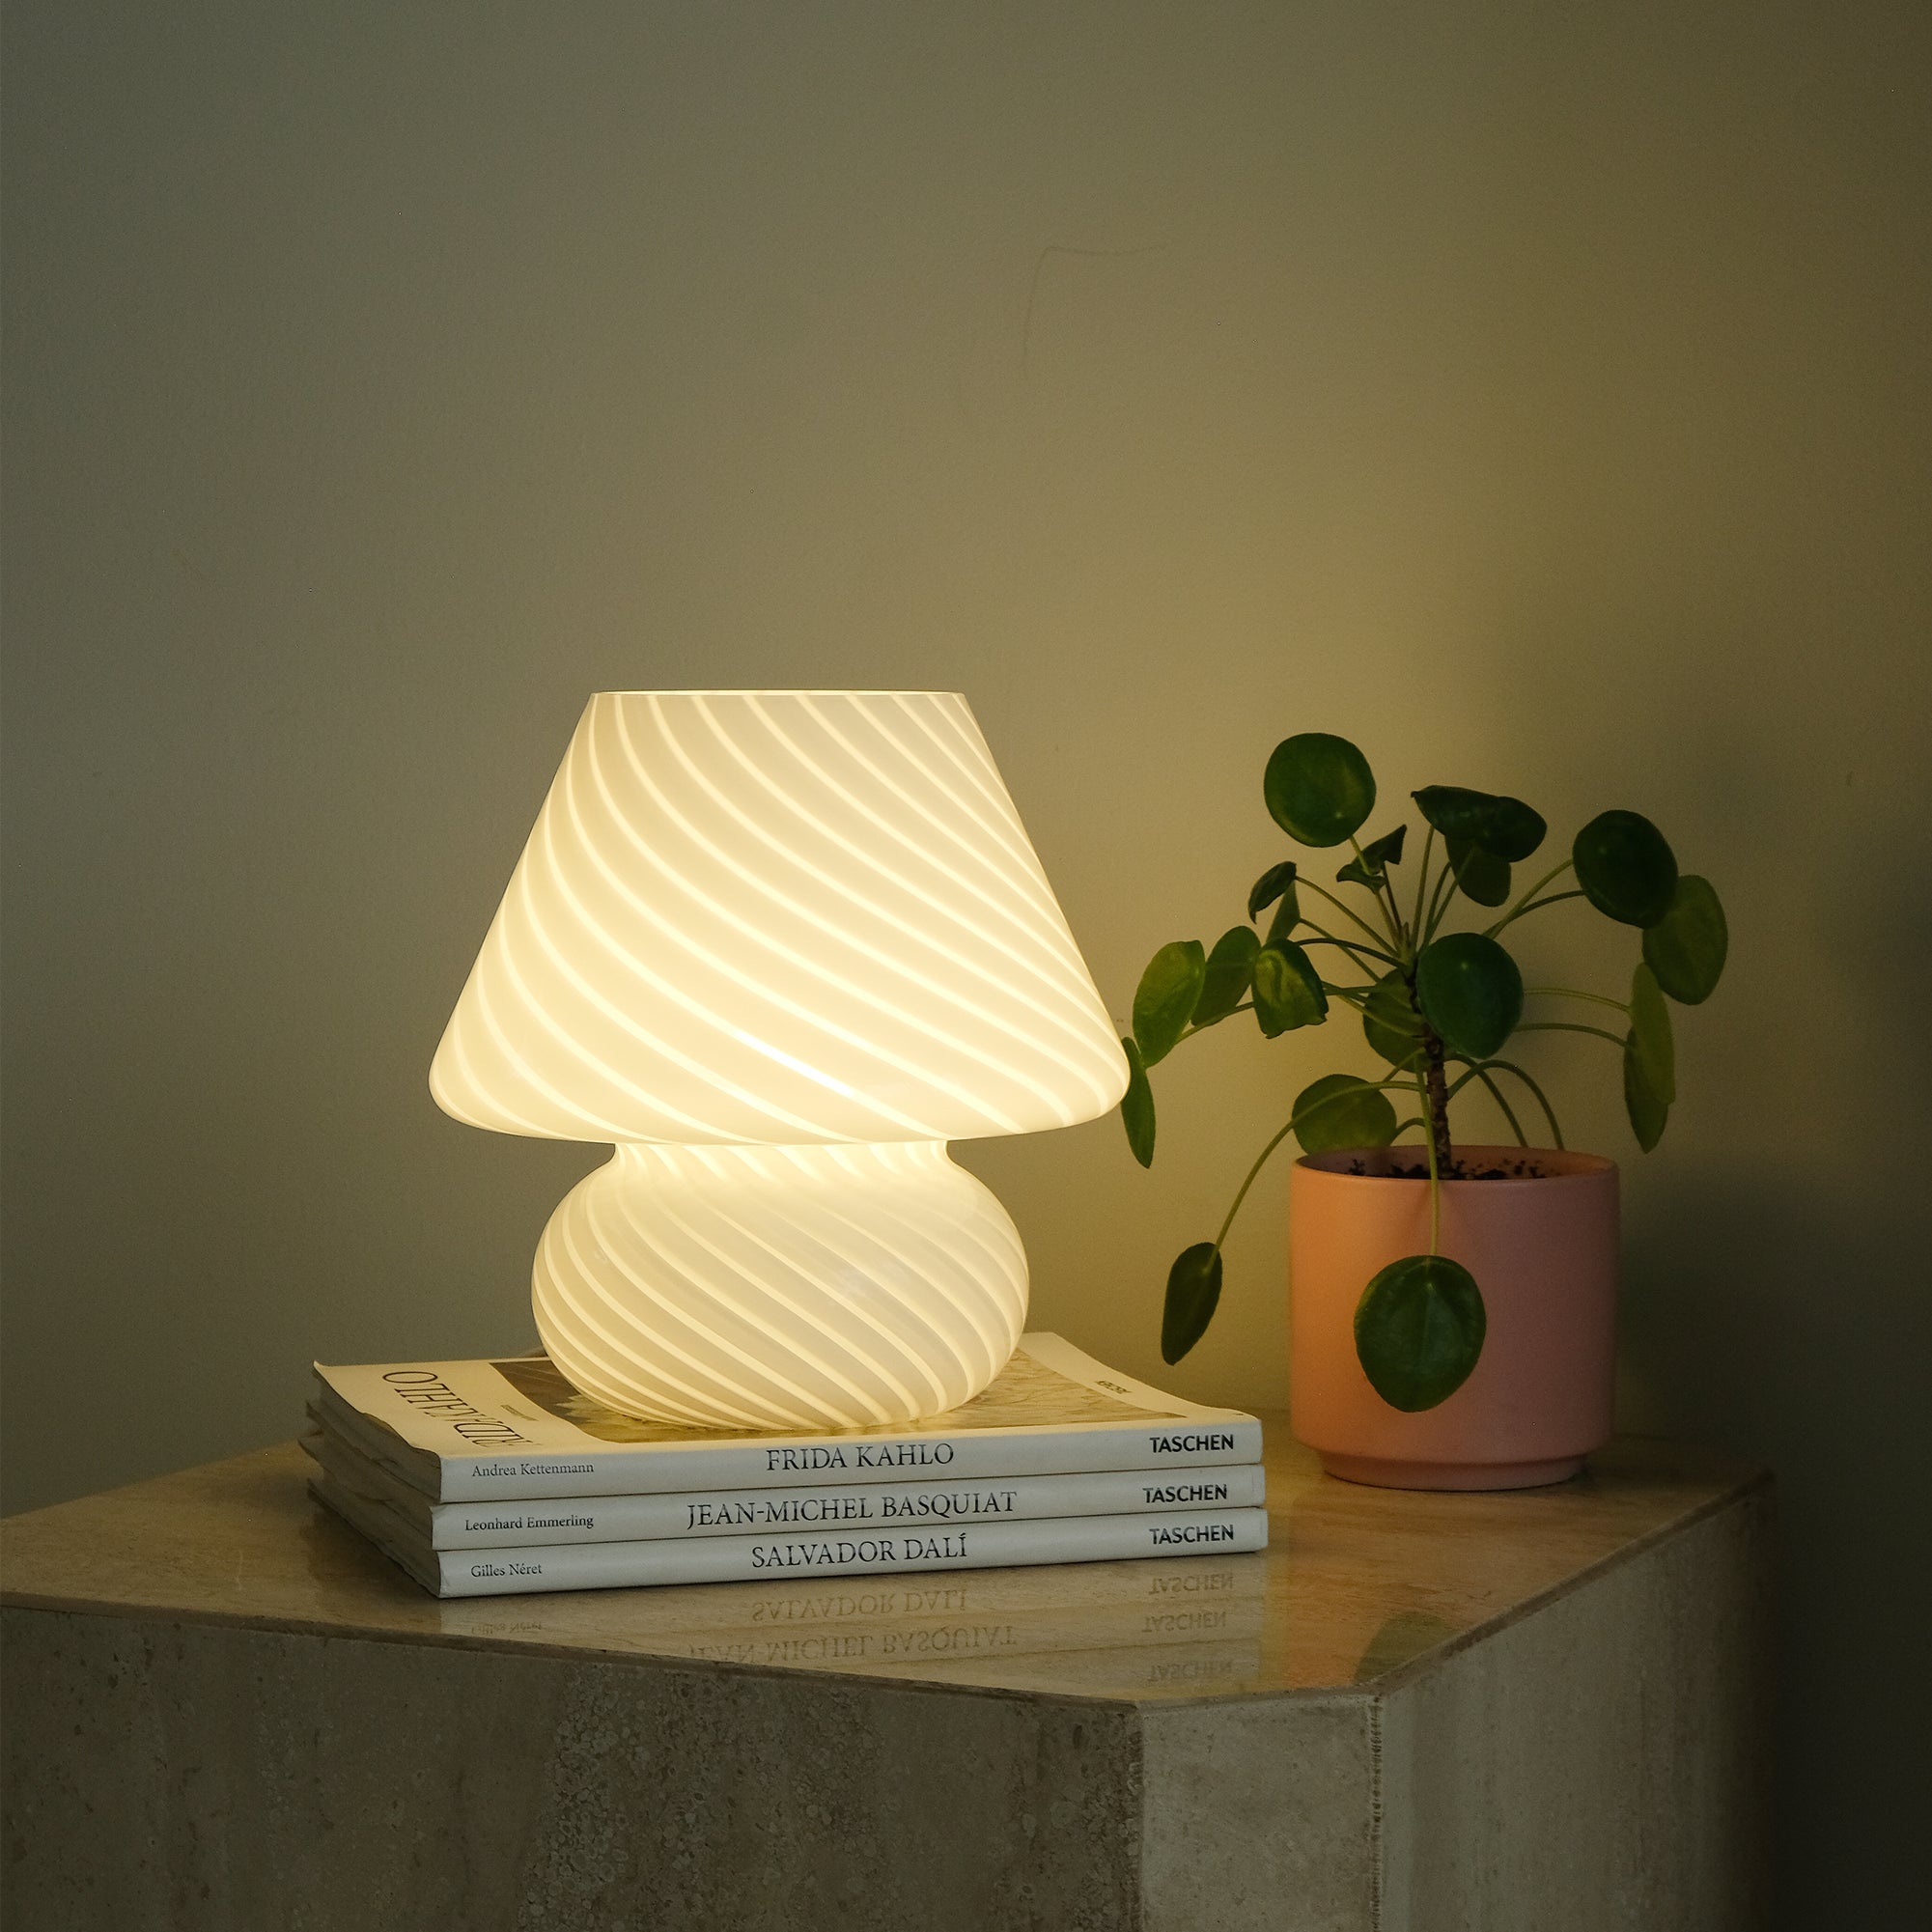 Glass Mushroom Table Lamp, Standard, White Swivel